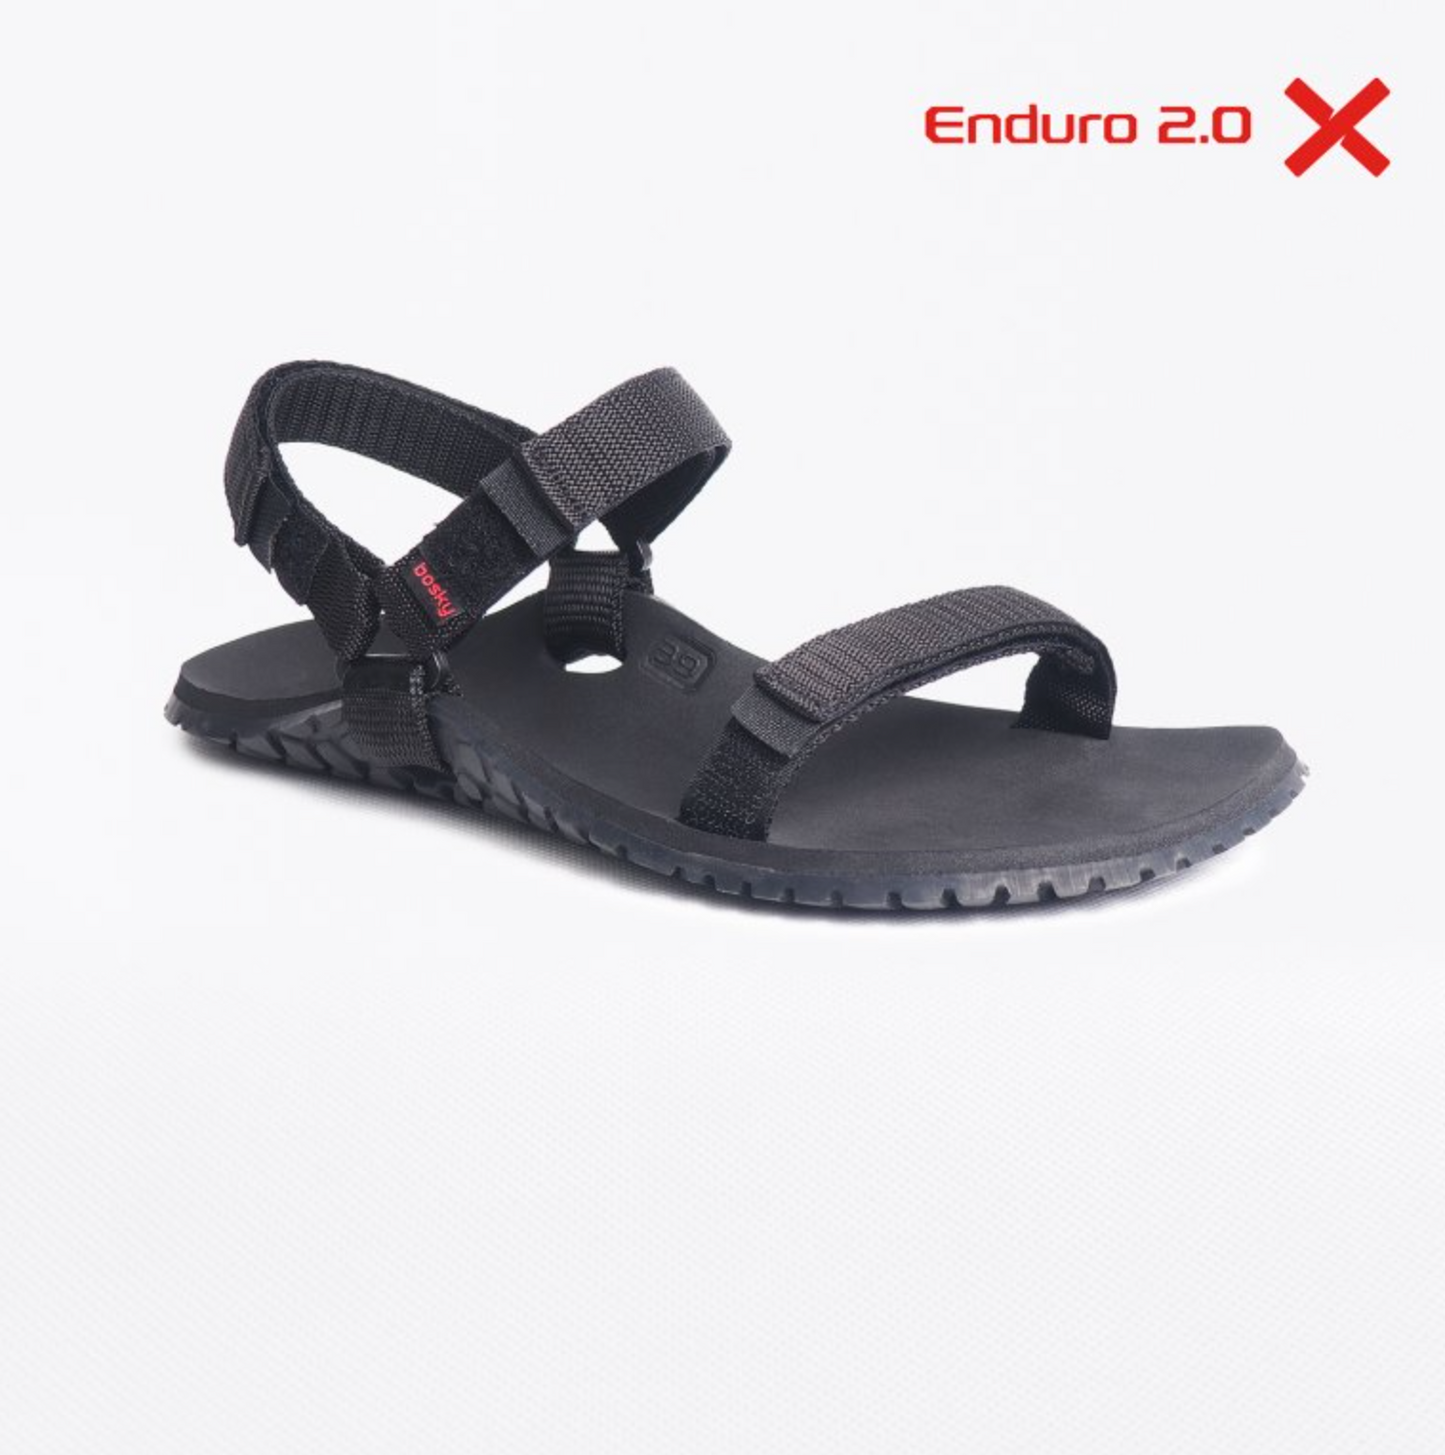 Bosky Enduro 2.0 X barfods sandaler til kvinder og mænd i farven black, yderside